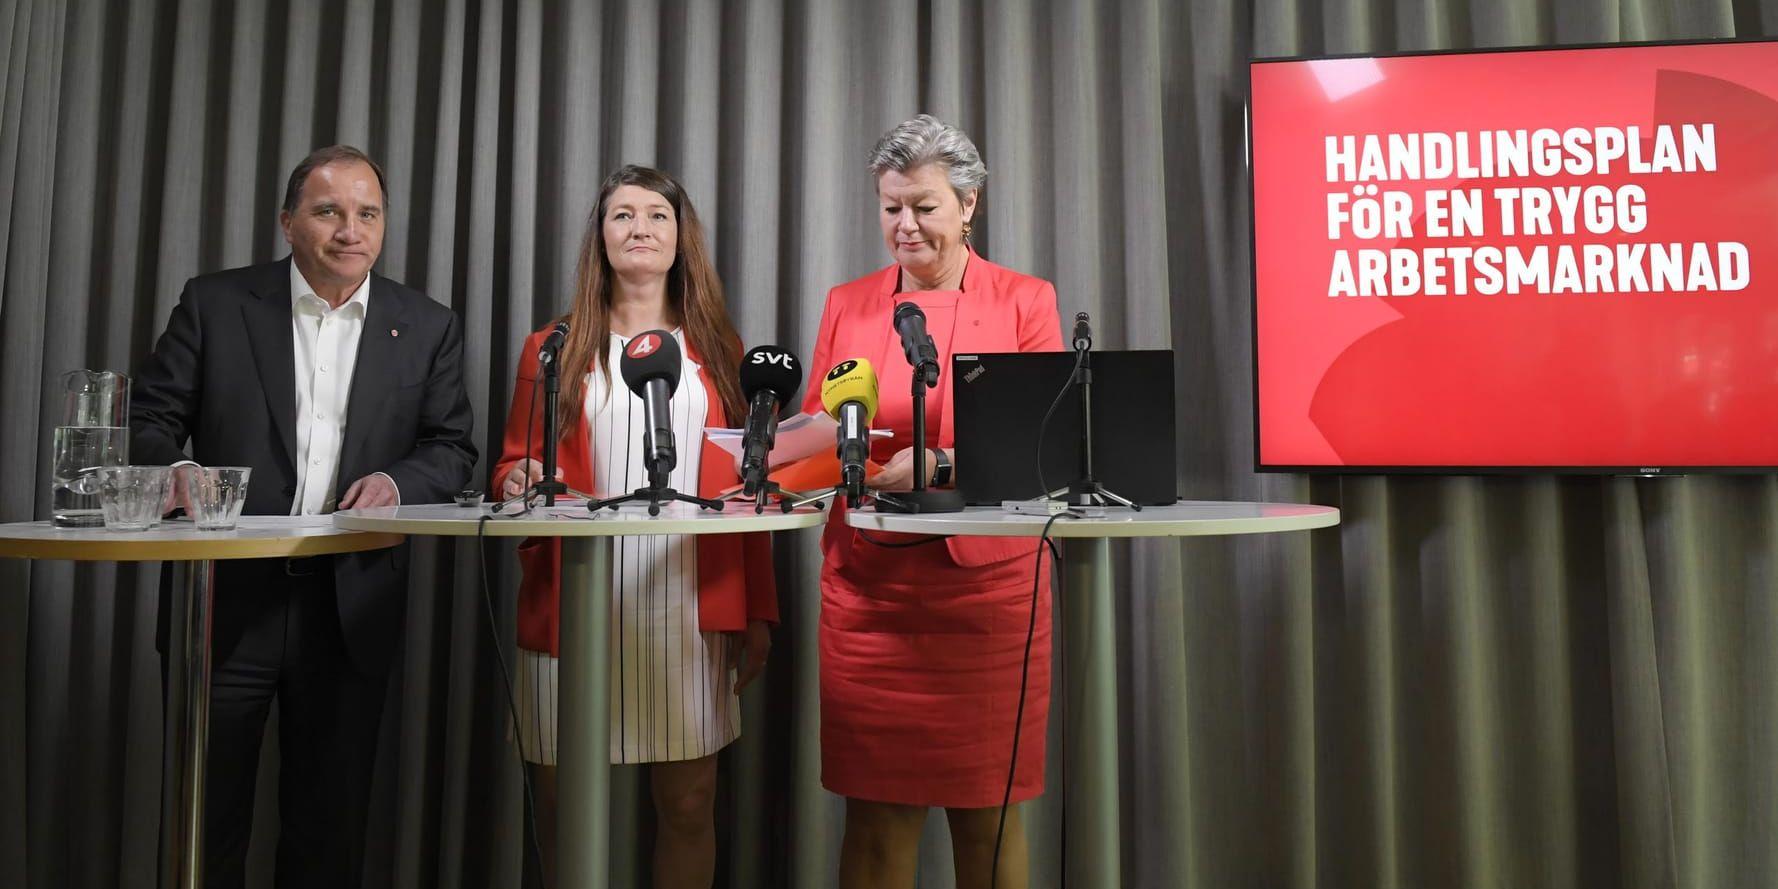 Socialdemokraternas partiledare Stefan Löfven, Susanna Gideonsson, suppleant i Socialdemokraternas verkställande utskott och ordförande för Handelsanställdas förbund och arbetsmarknadsminister Ylva Johansson.